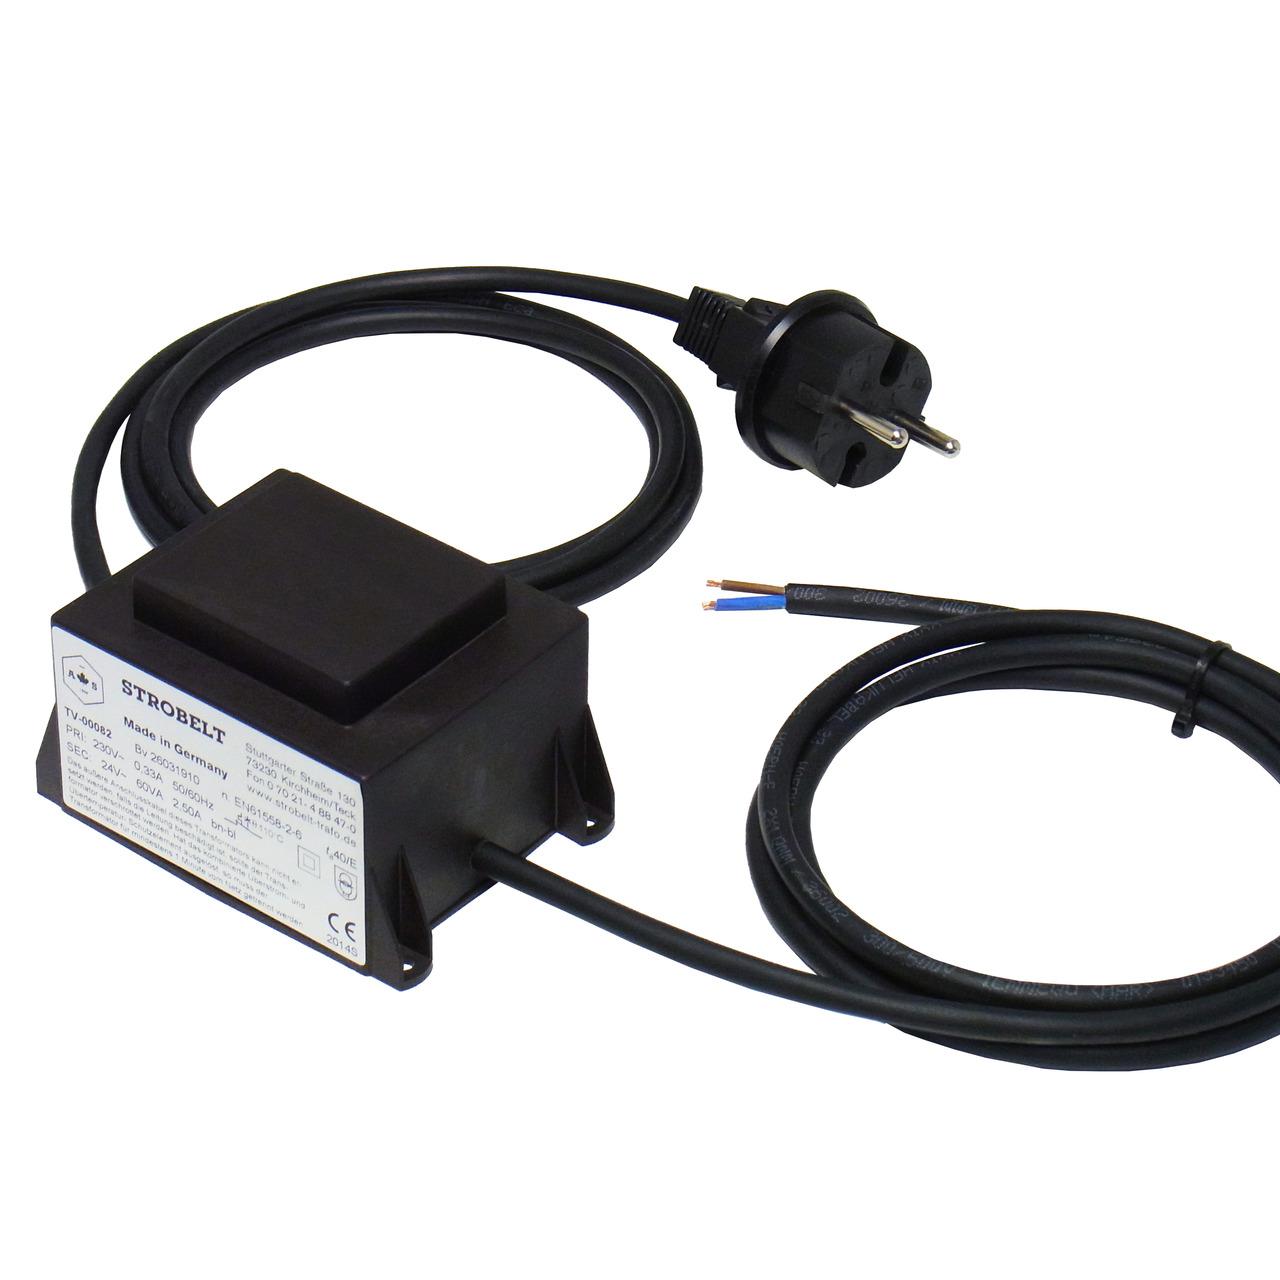 Strobelt Sicherheitstransformator 60 VA- 230V- 50-60 Hz- SEC 24V AC- vergossen in Gehäuse- IP44 unter Stromversorgung